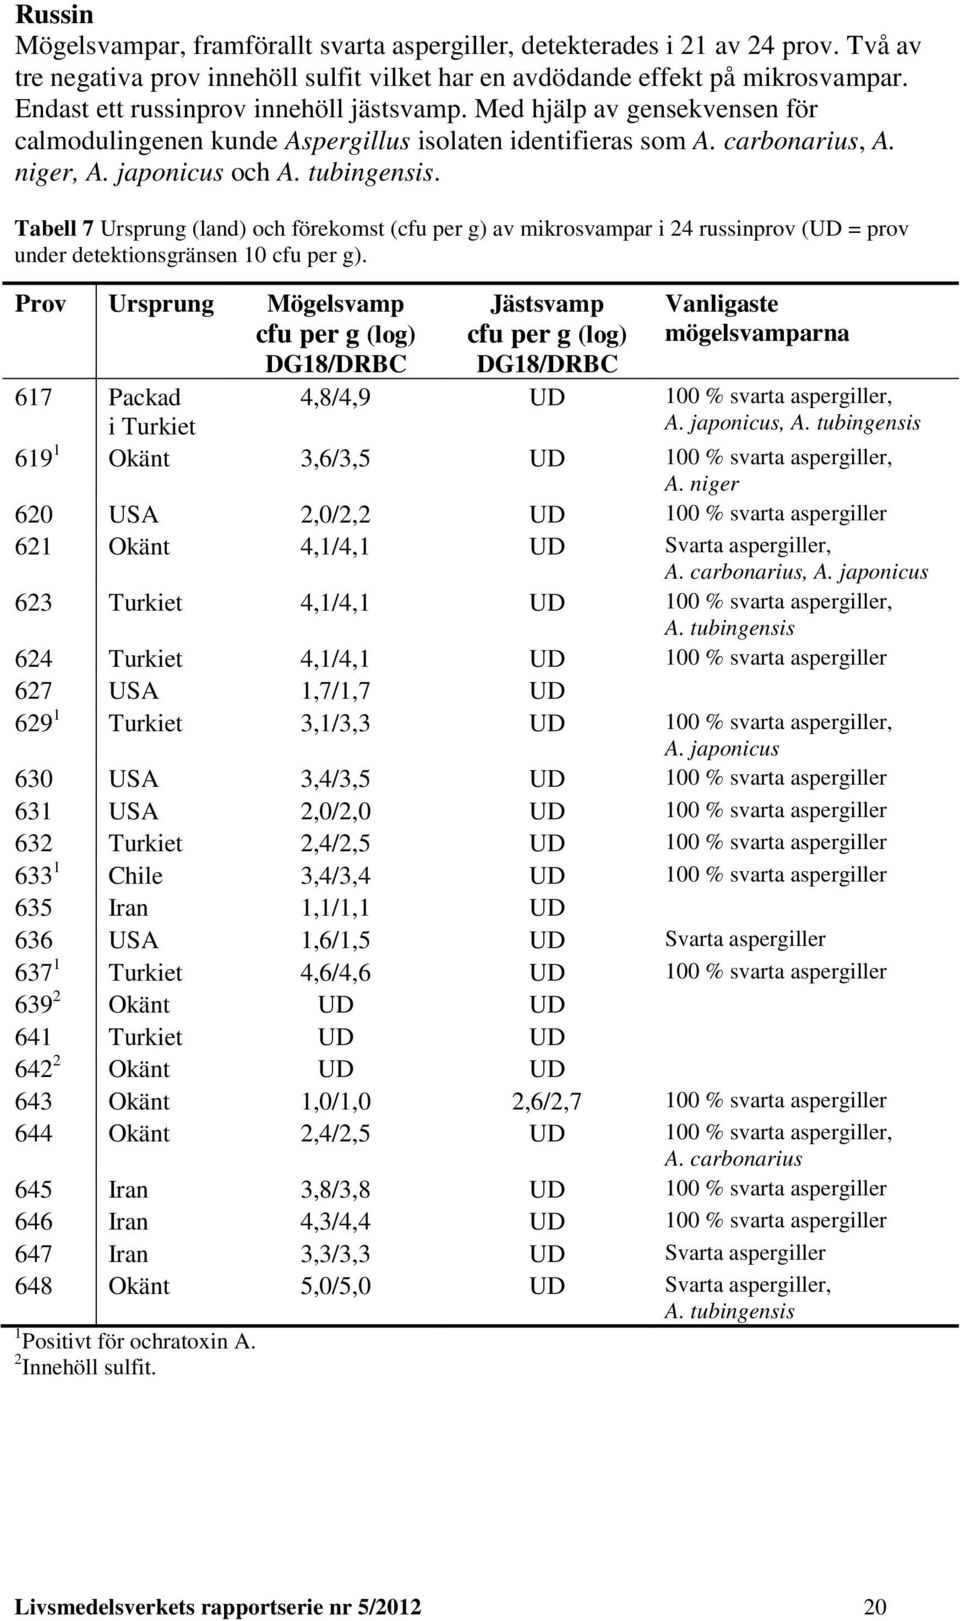 Tabell 7 Ursprung (land) och förekomst (cfu per g) av mikrosvampar i 24 russinprov (UD = prov under detektionsgränsen 10 cfu per g).